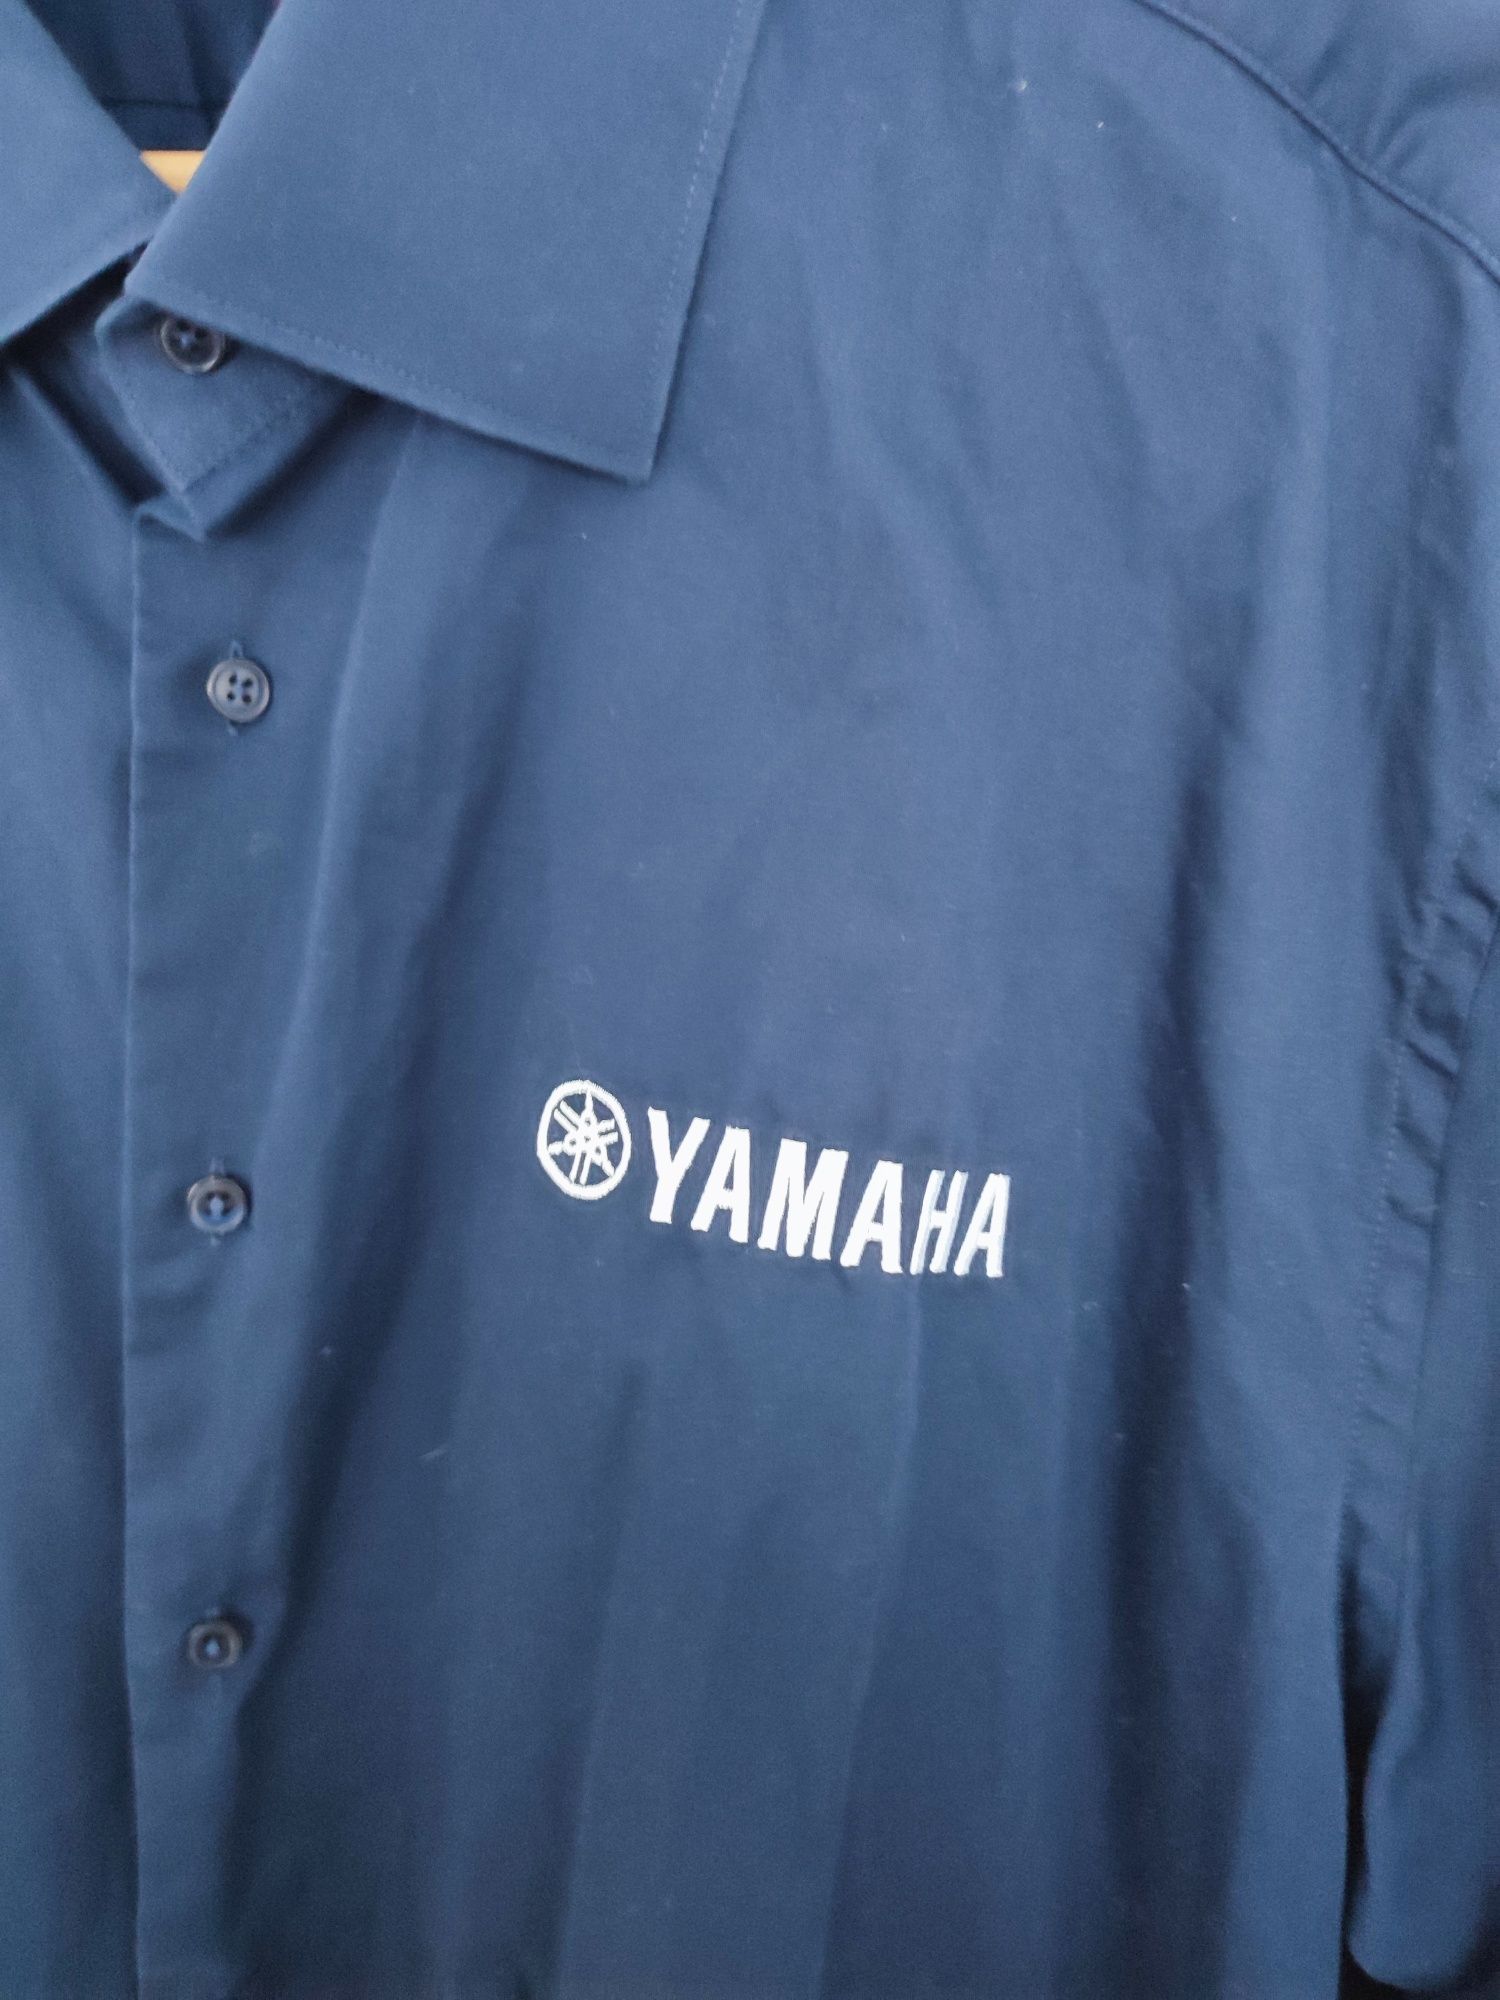 Yamaha koszula XXL 2XL